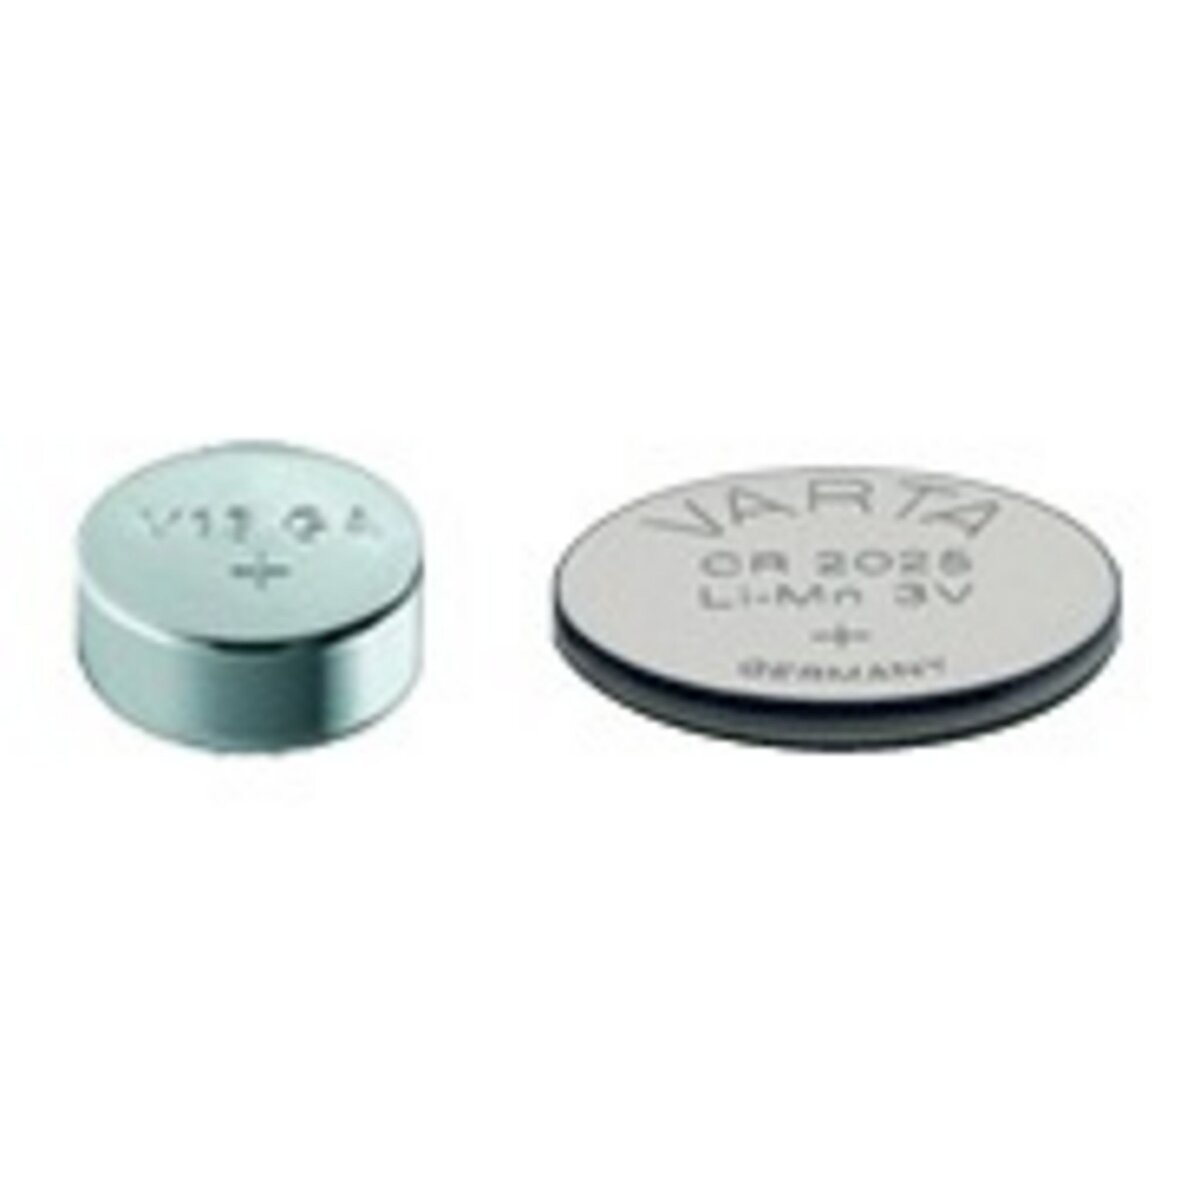 Lithium CR1220, 3 V, 1 pile bouton